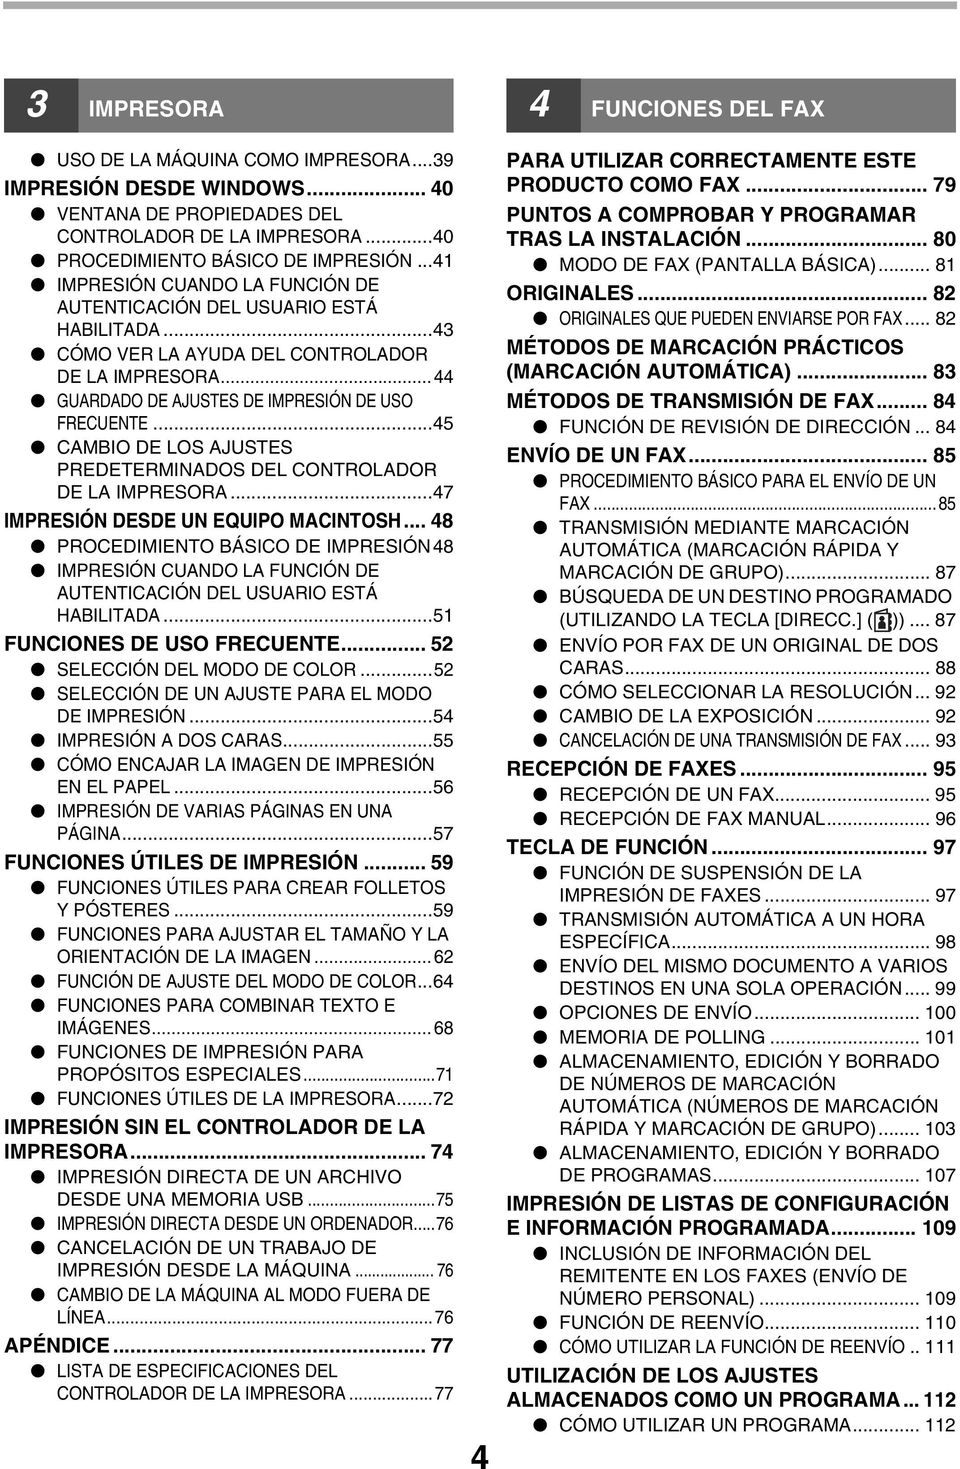 ..45 CAMBIO DE LOS AJUSTES PREDETERMINADOS DEL CONTROLADOR DE LA IMPRESORA...47 IMPRESIÓN DESDE UN EQUIPO MACINTOSH.